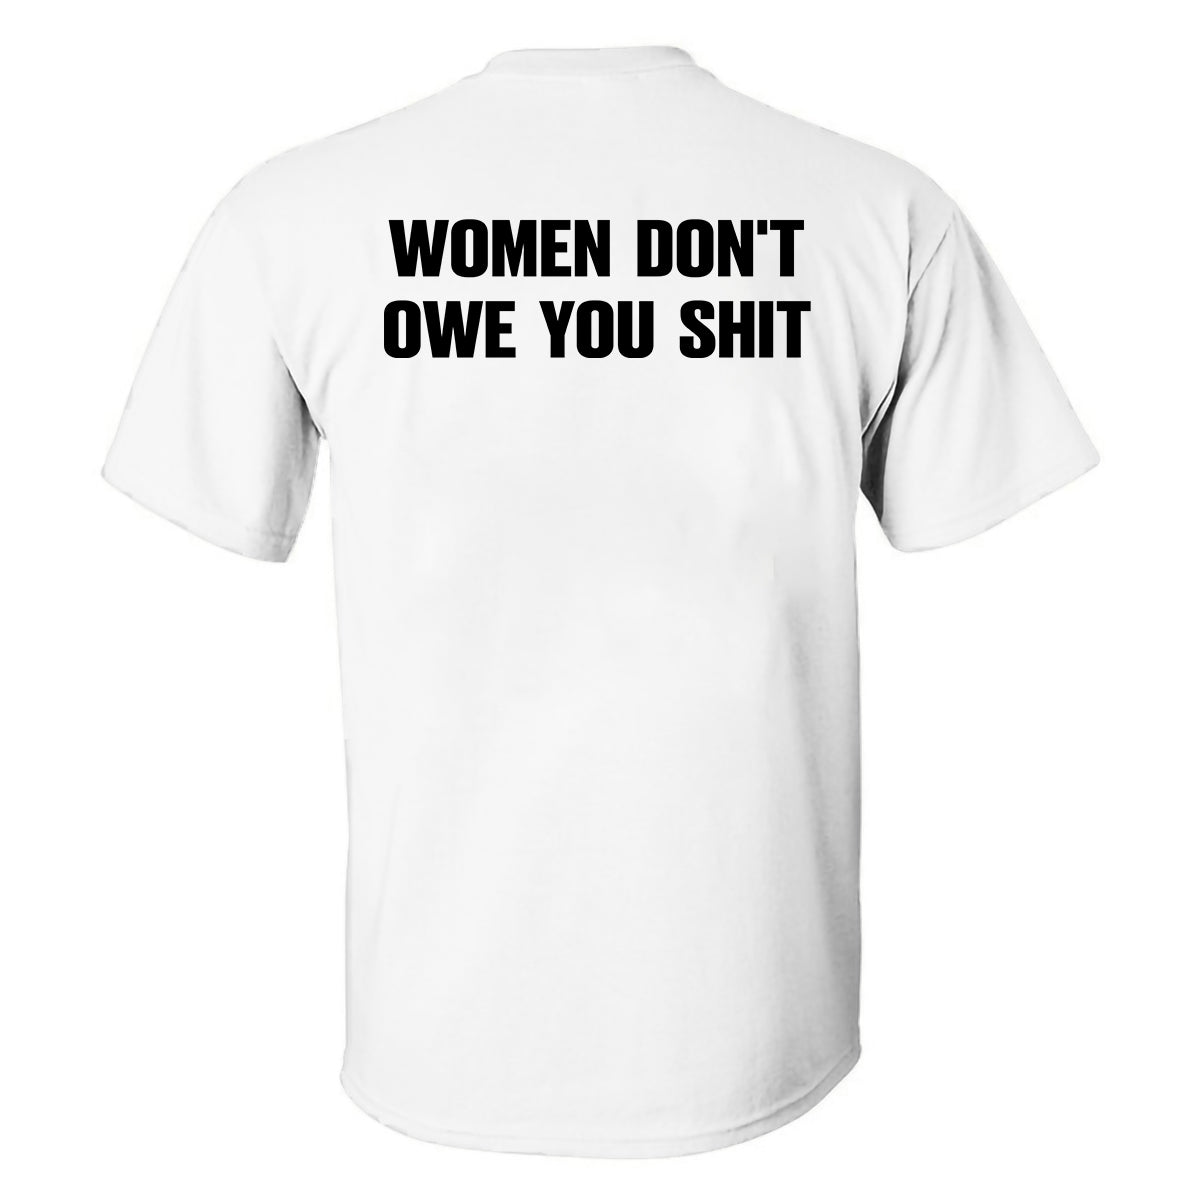 Women Don't Owe You Shit Printed Men's T-shirt